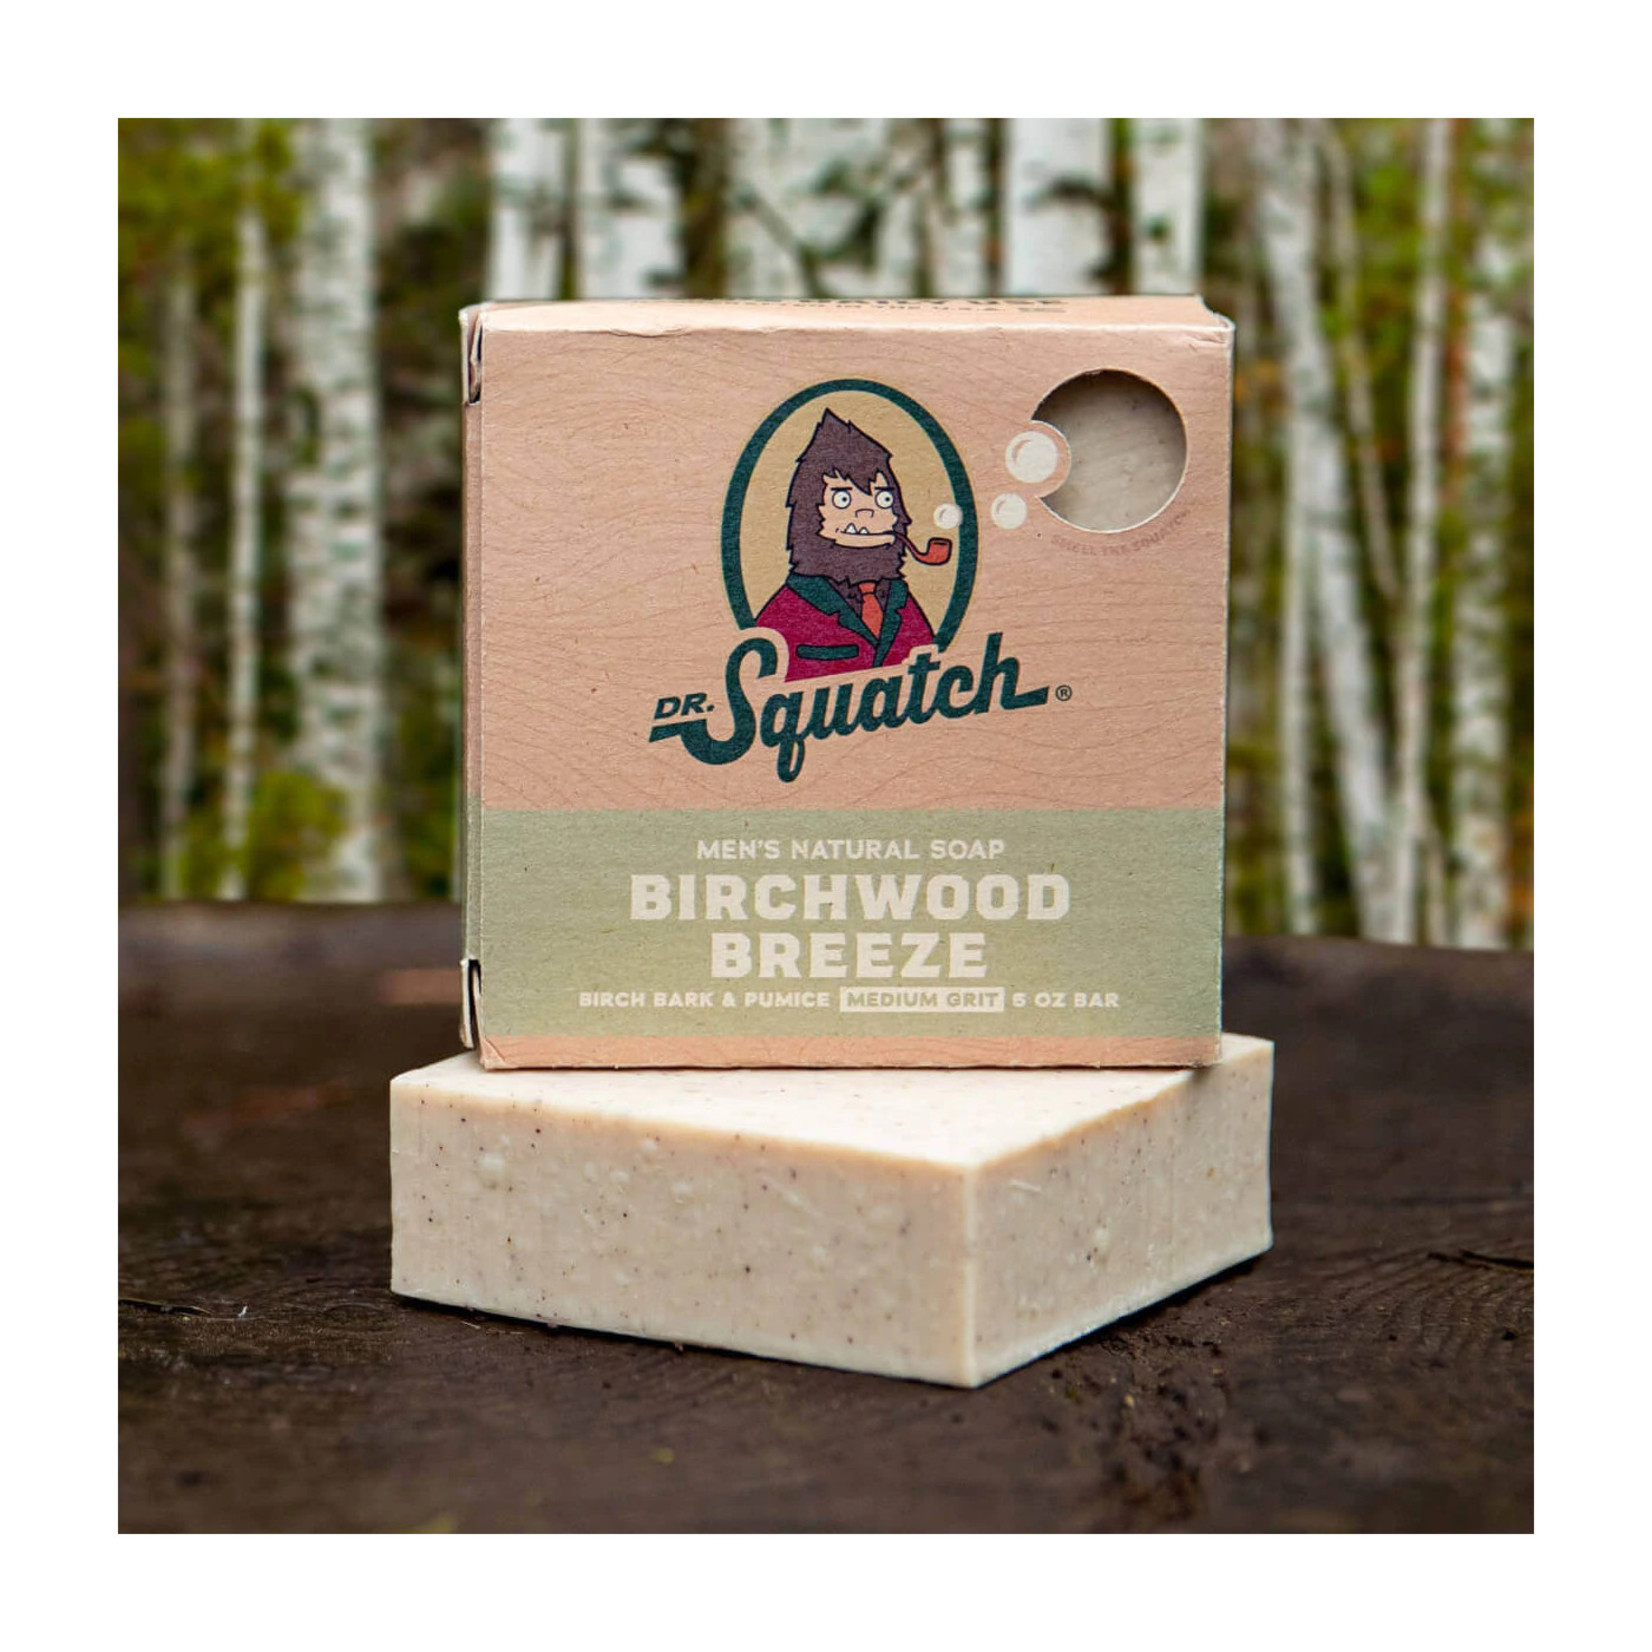 Birchwood Breeze Bar Soap - Pico's Worldwide